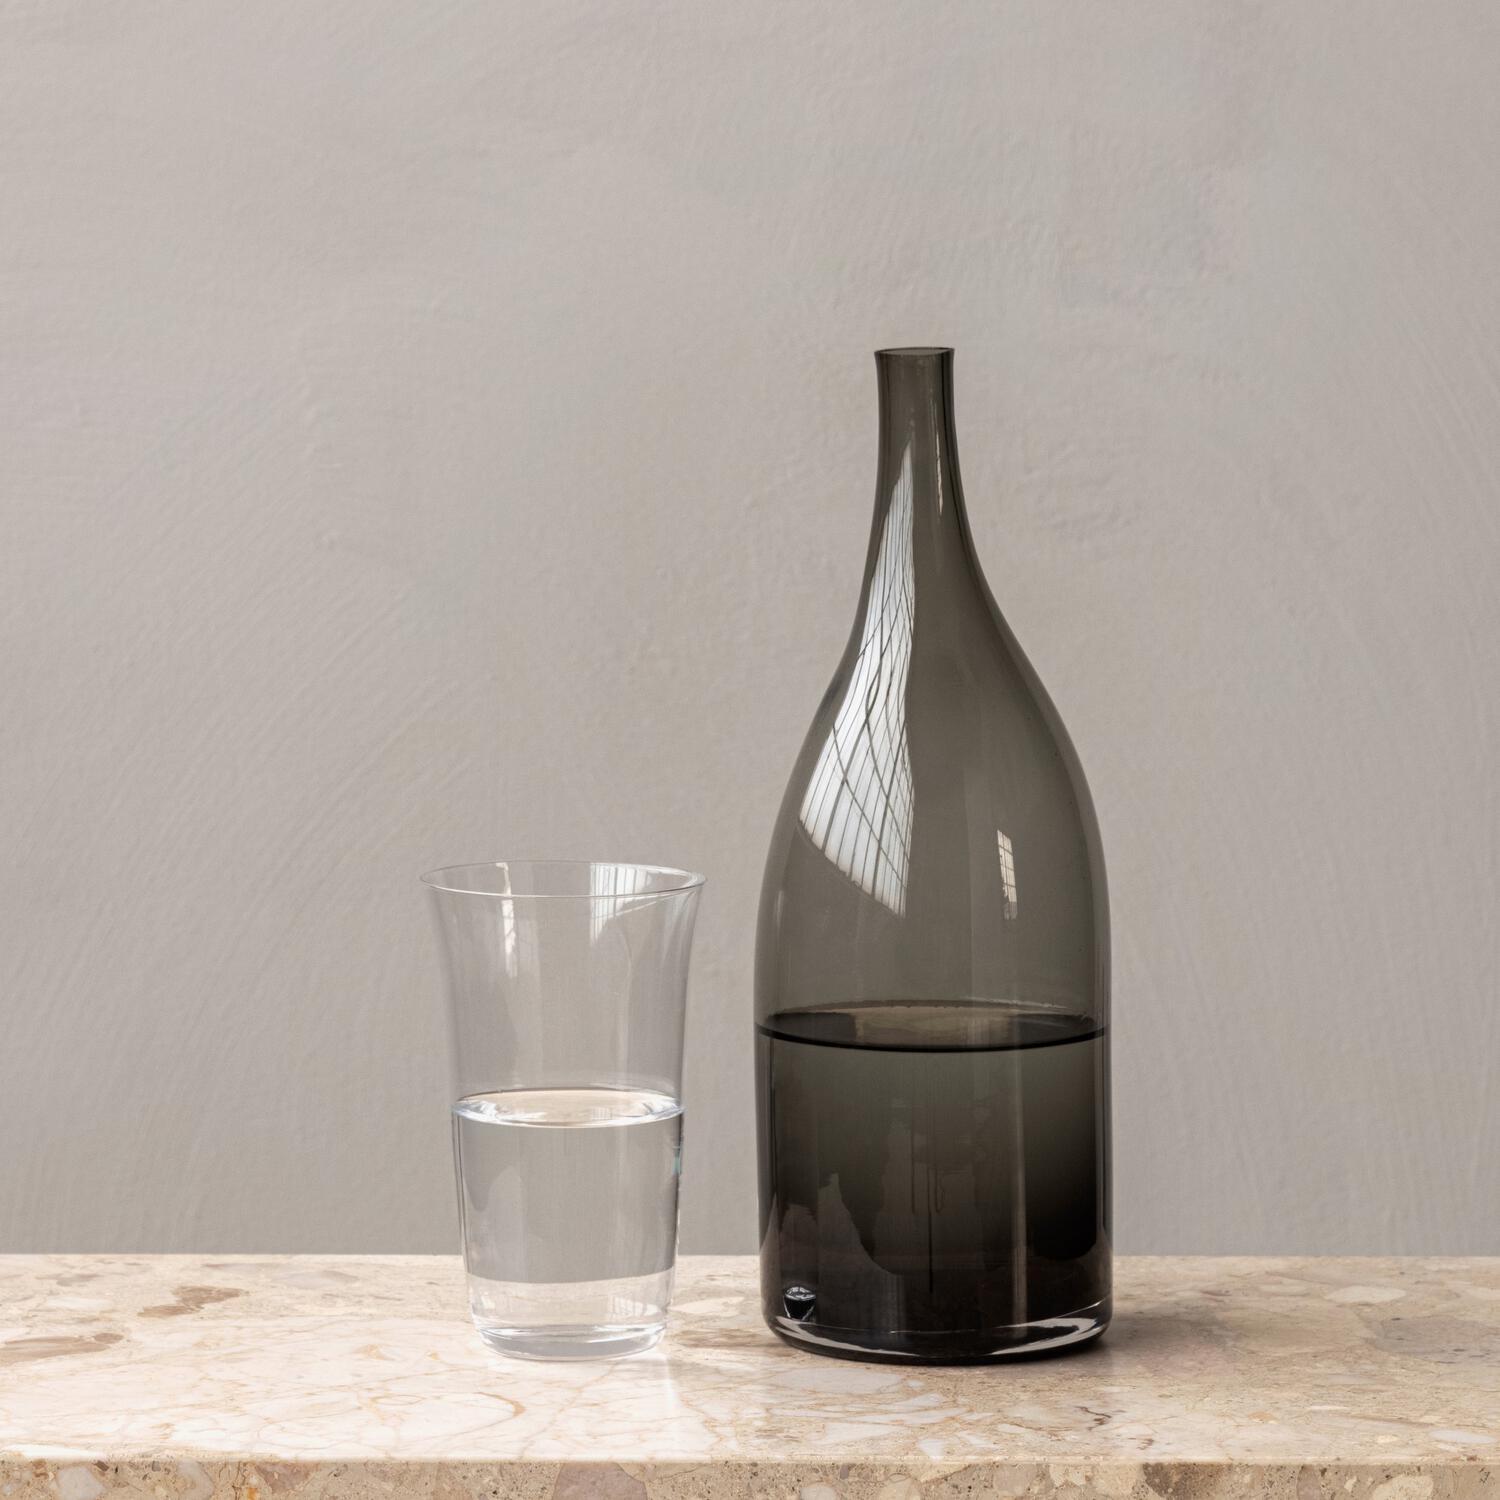 Strandgade Carafe  Asymmetrical glass carafe by Mentze Ottenstein – Audo  Copenhagen